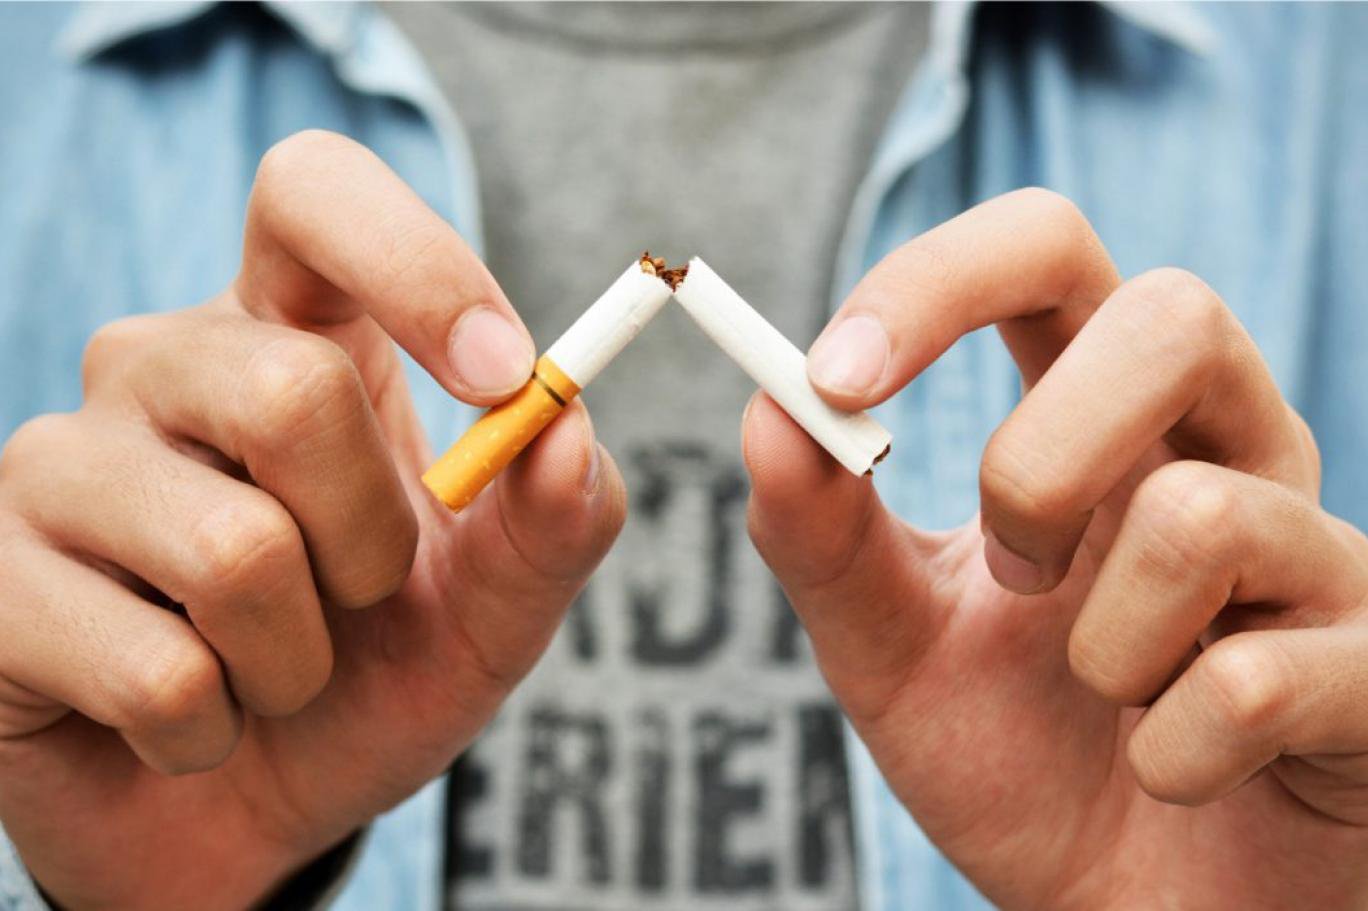 Cai thuốc lá mất bao lâu và những thay đổi của cơ thể khi cai nghiện